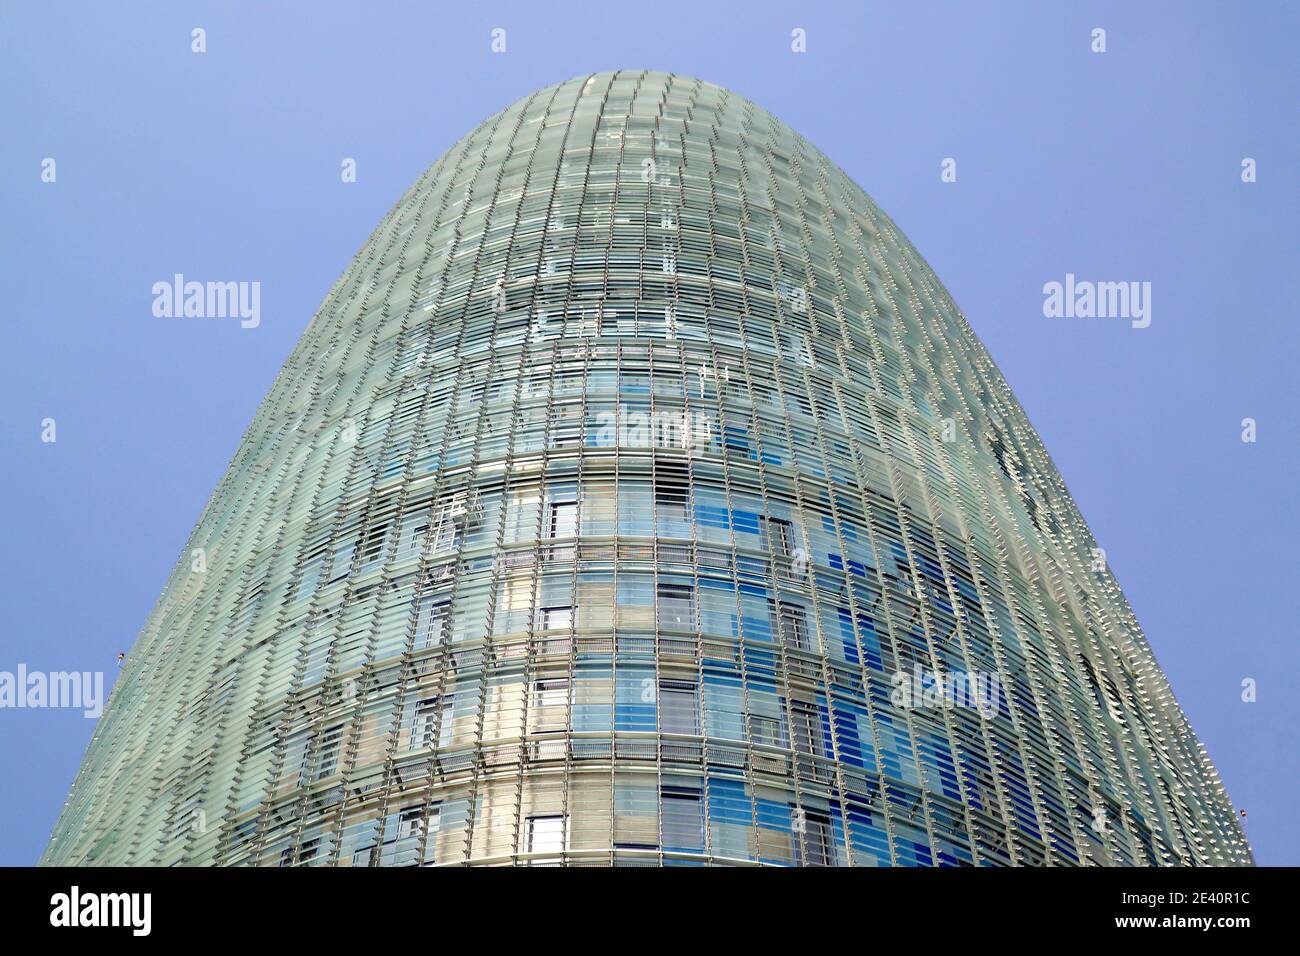 hochhaus, immeuble de plusieurs étages, grattacielo, Rascacielos, nouvel, aufblick, look up, vista dal basso, vista desde abajo Banque D'Images